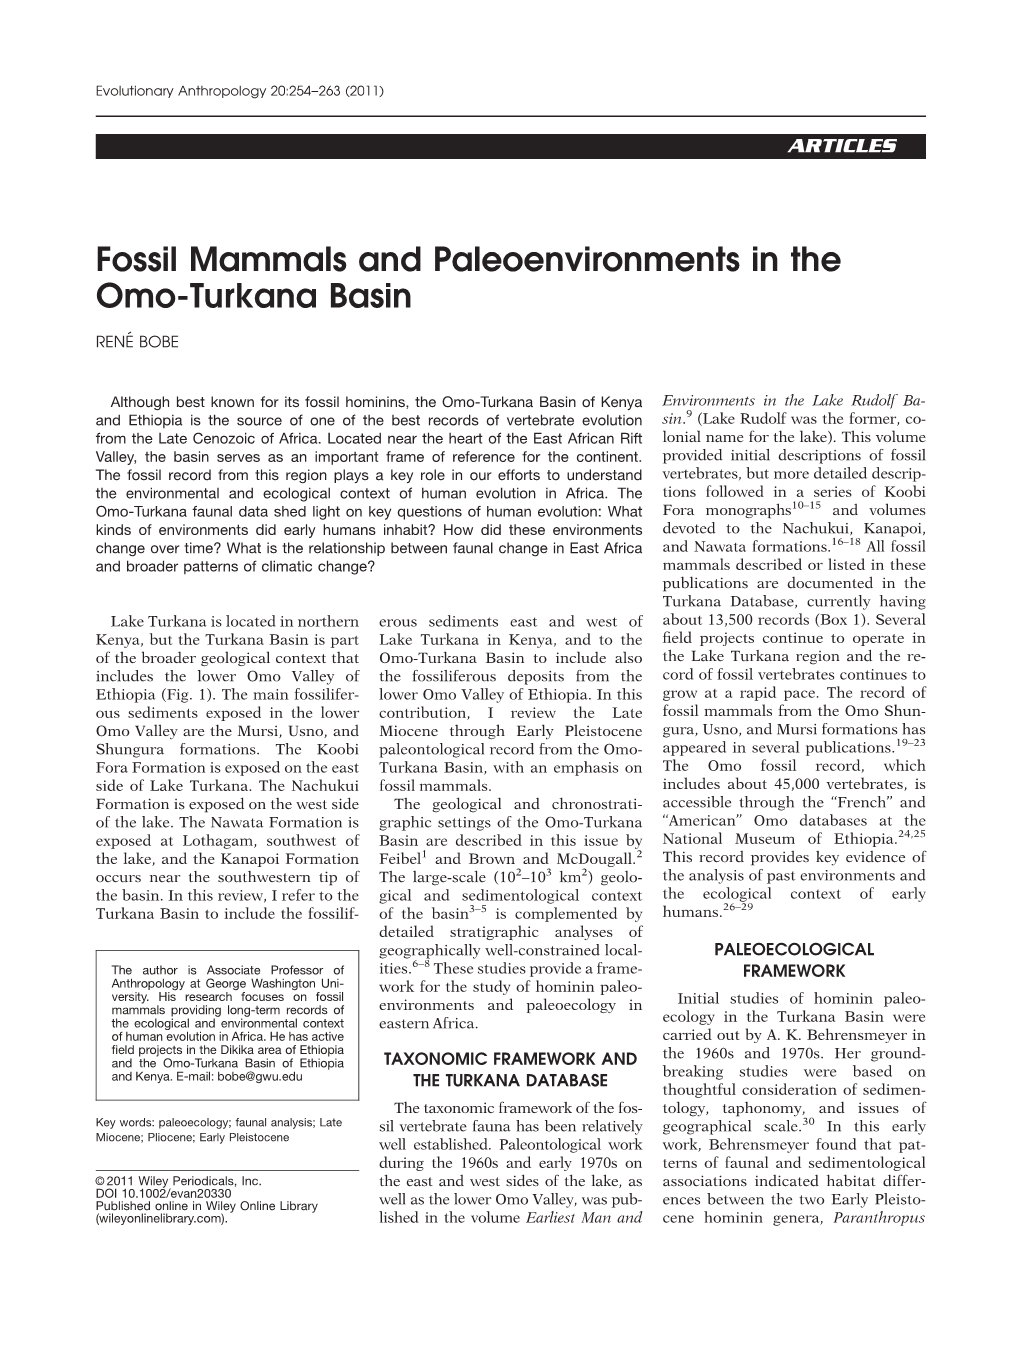 Fossil Mammals and Paleoenvironments in the Omo-Turkana Basin